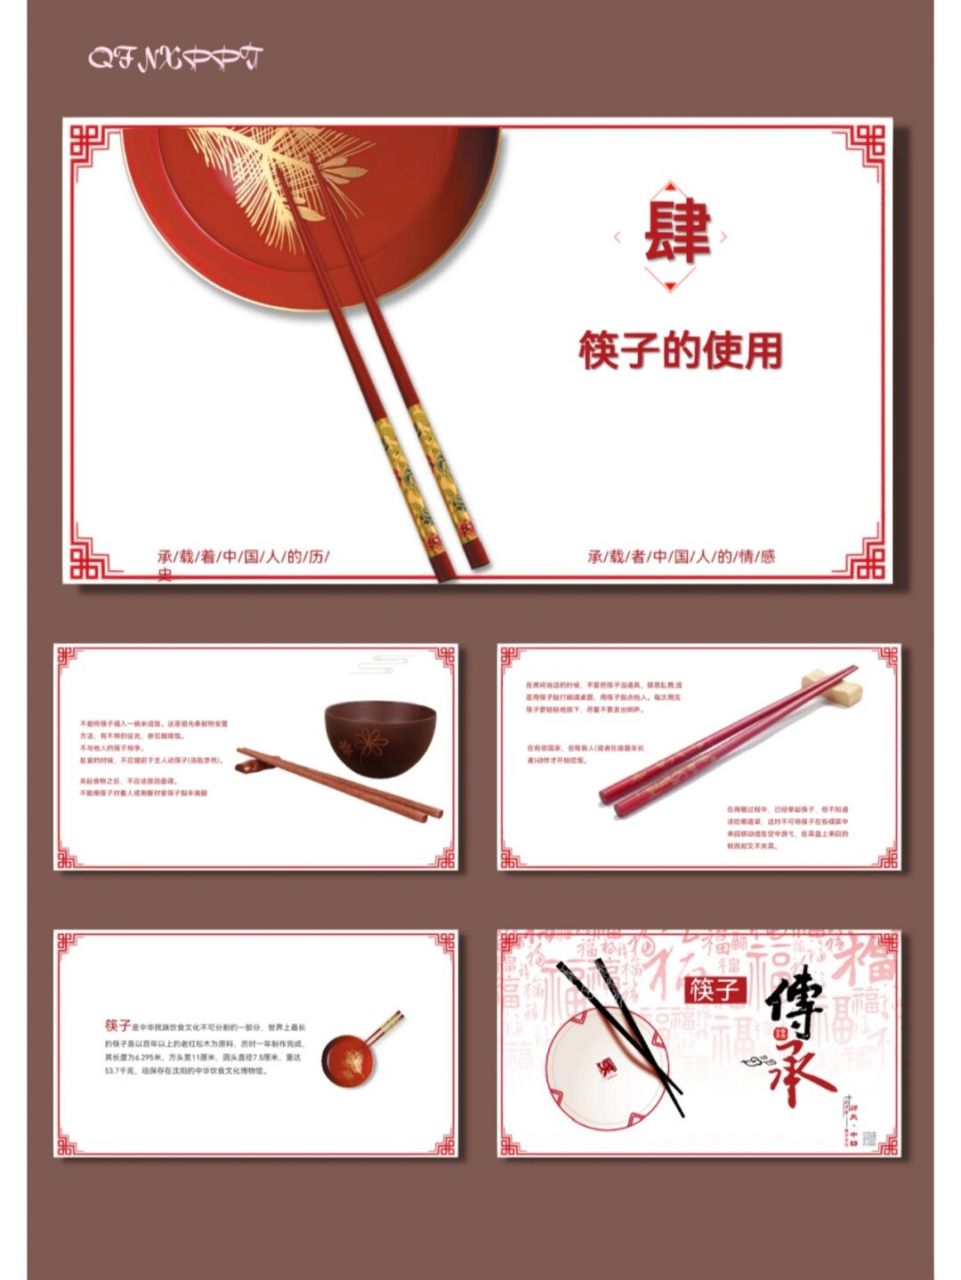 中国筷子文化ppt图片